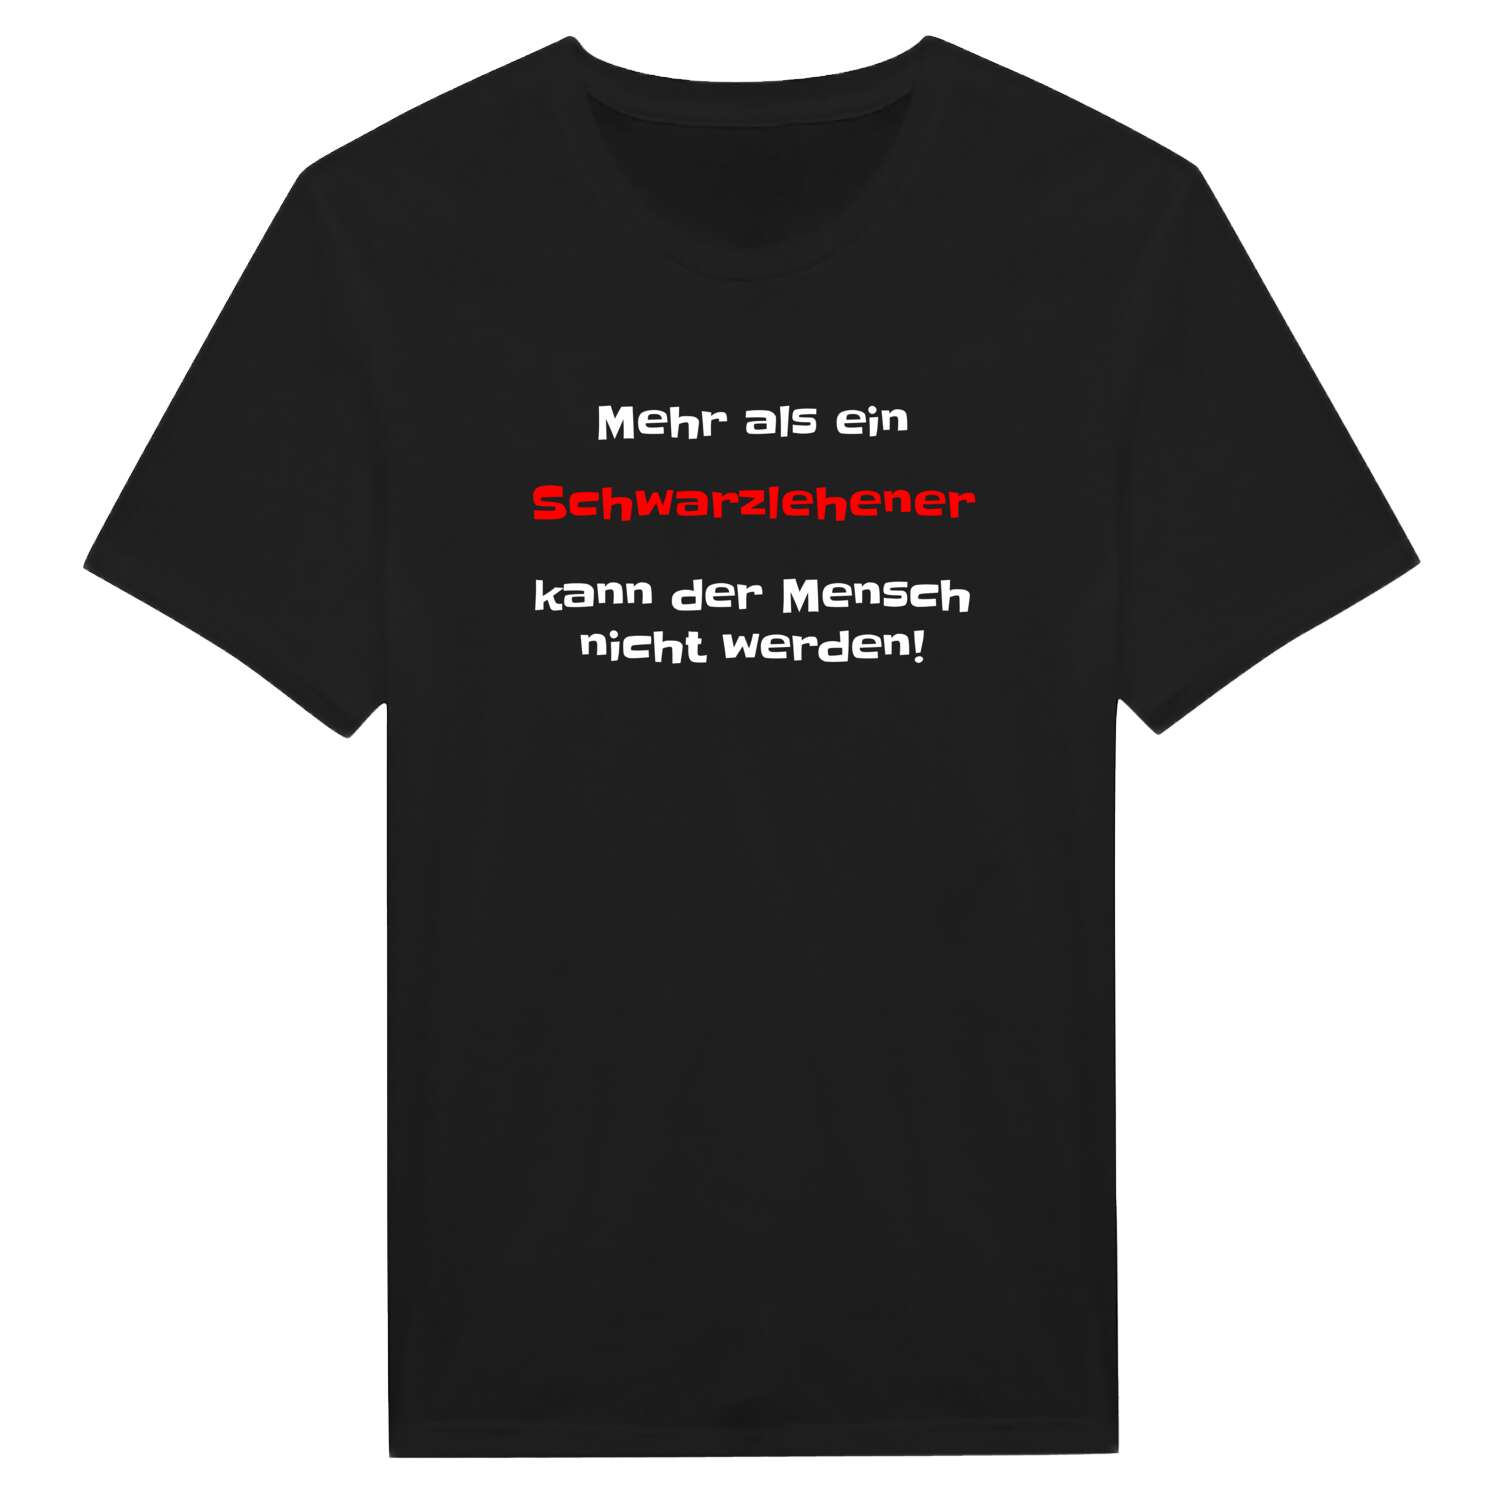 Schwarzlehen T-Shirt »Mehr als ein«